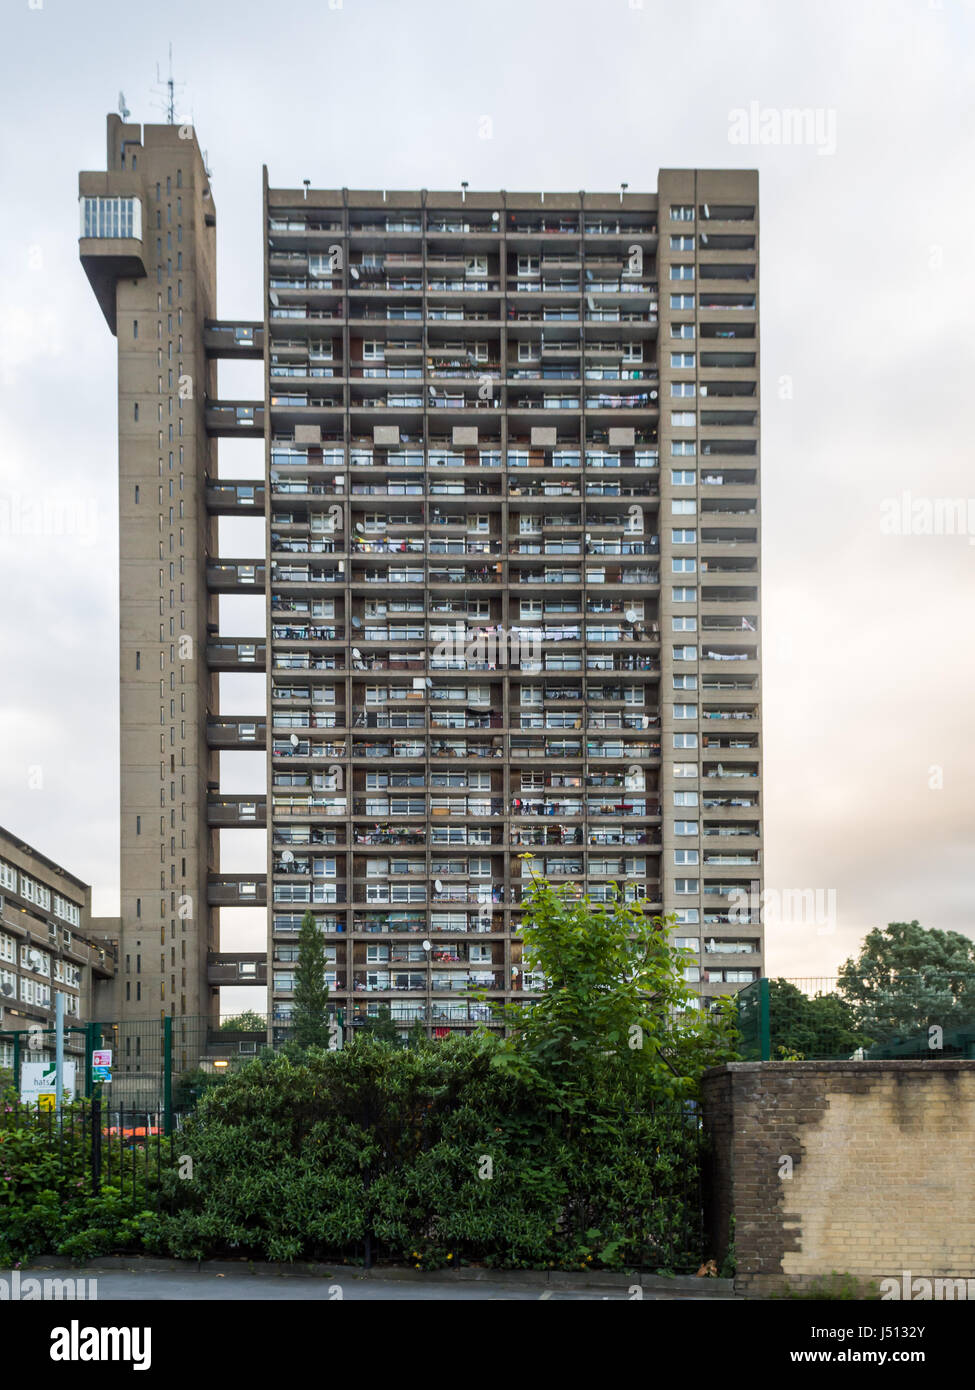 Londres, Angleterre - 21 juin 2016 : Le conseil Tour Trellick brutaliste estate bloc d'appartements dans le nord de Kensington. Banque D'Images